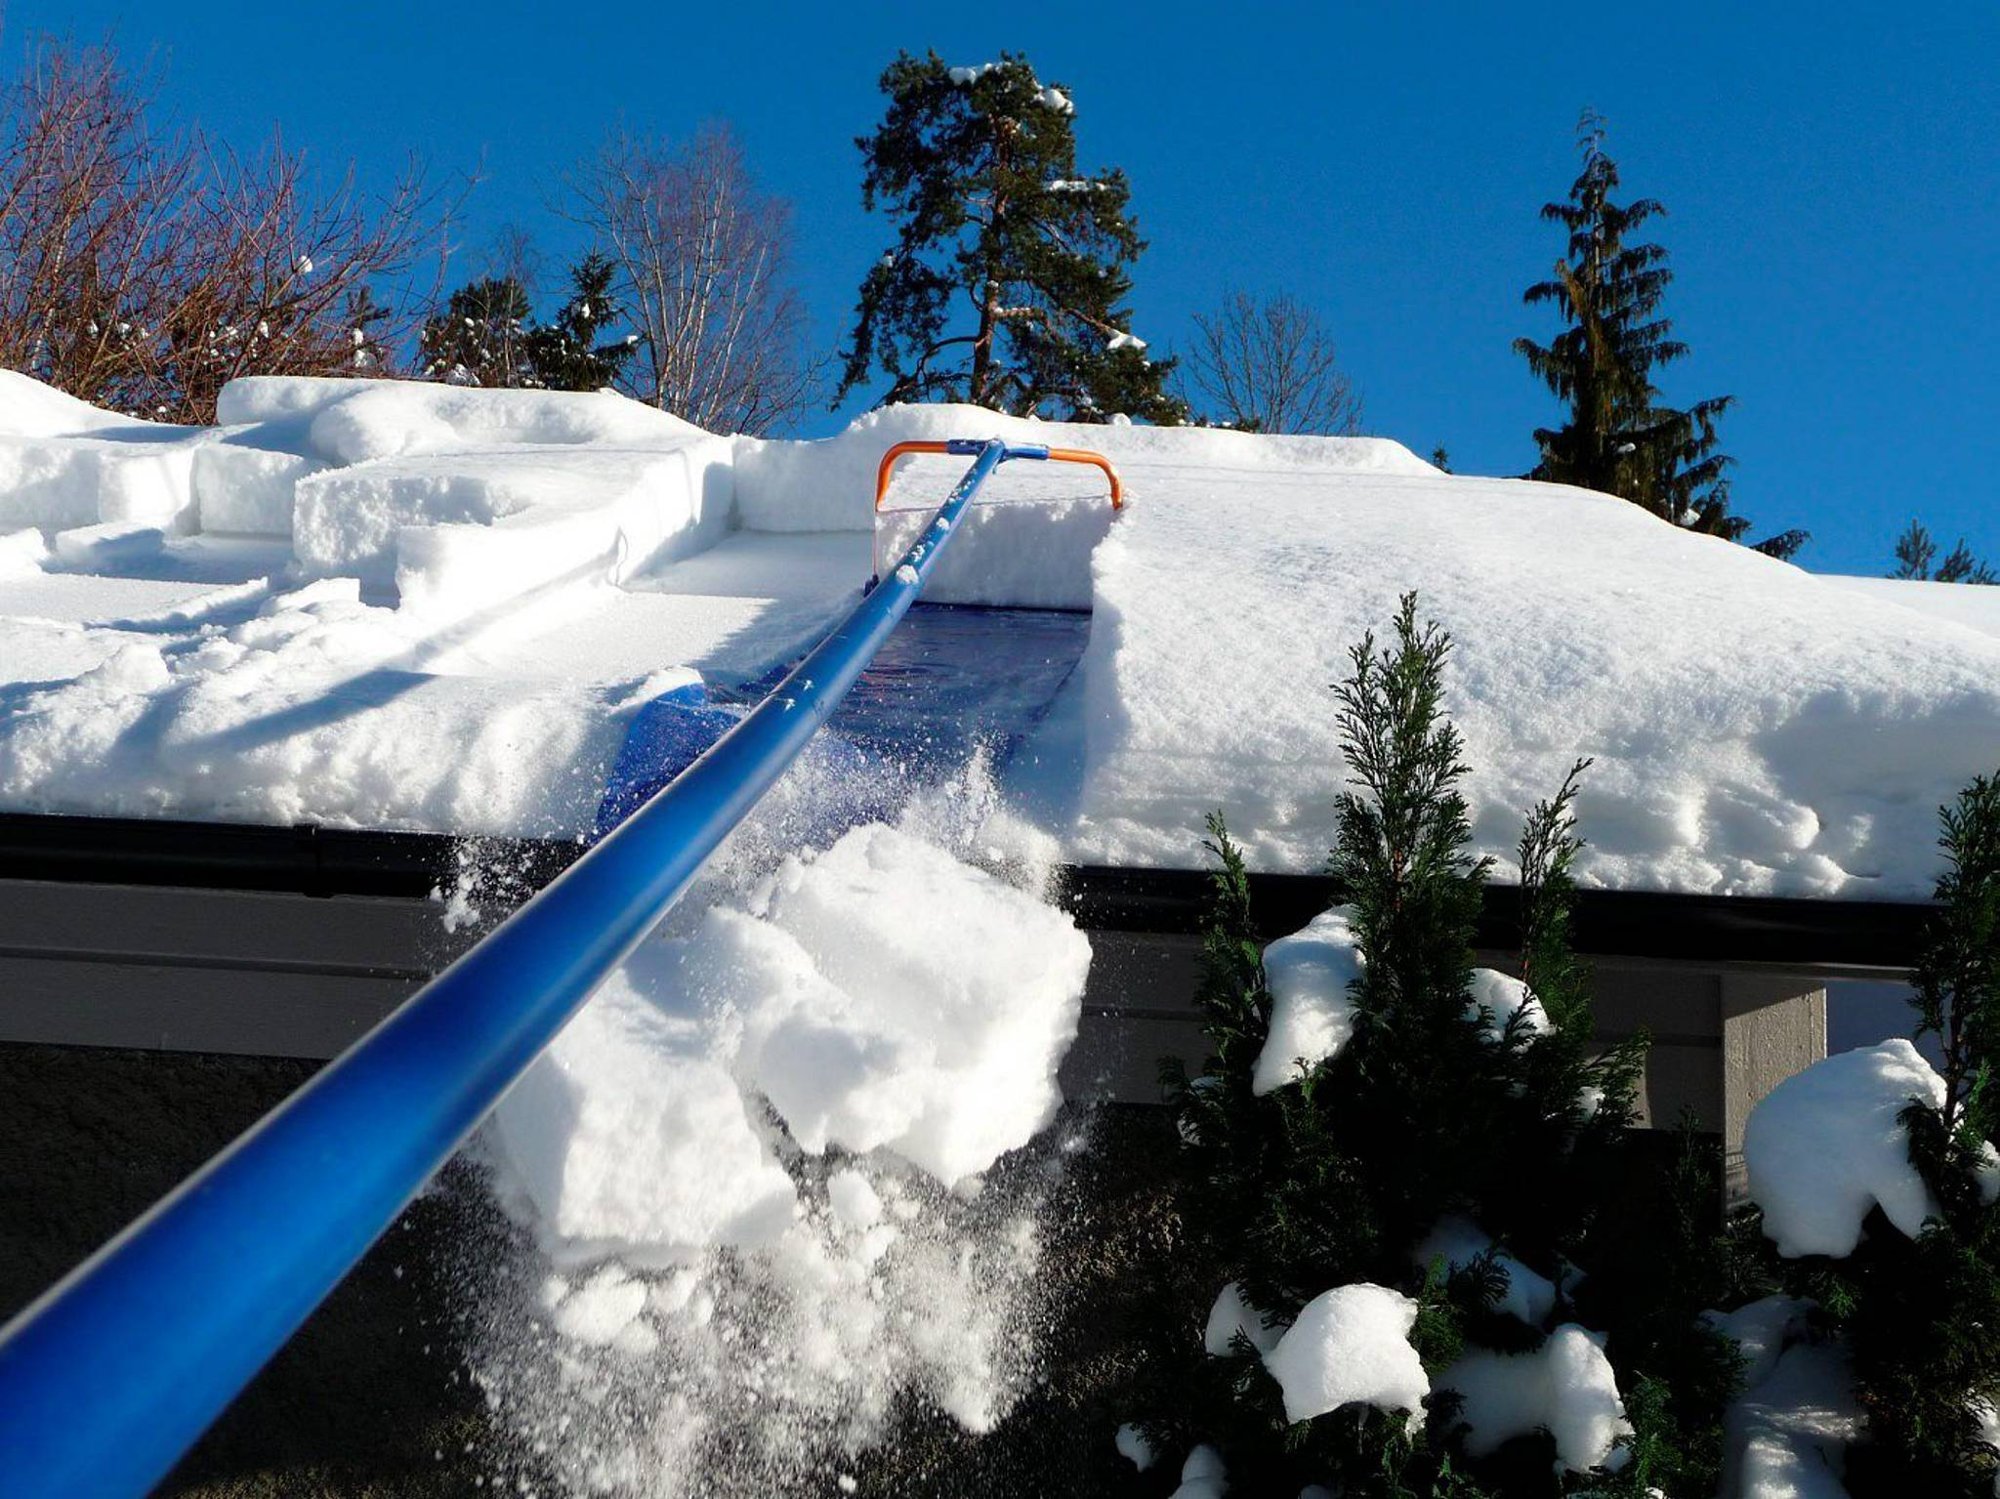 Снять снежок. Скребок для уборки снега с крыши с тканью 1,9-6,3м 11646. Скребок для уборки снега с крыши с тканью 1,9-6,3м 11646 дракон. Скребок для снега с крыши с тканью 1.9-6.3м 11646. Скребок для уборки снега с крыши скрепер с тканью "лавина" 1,9-6,3м 11646.